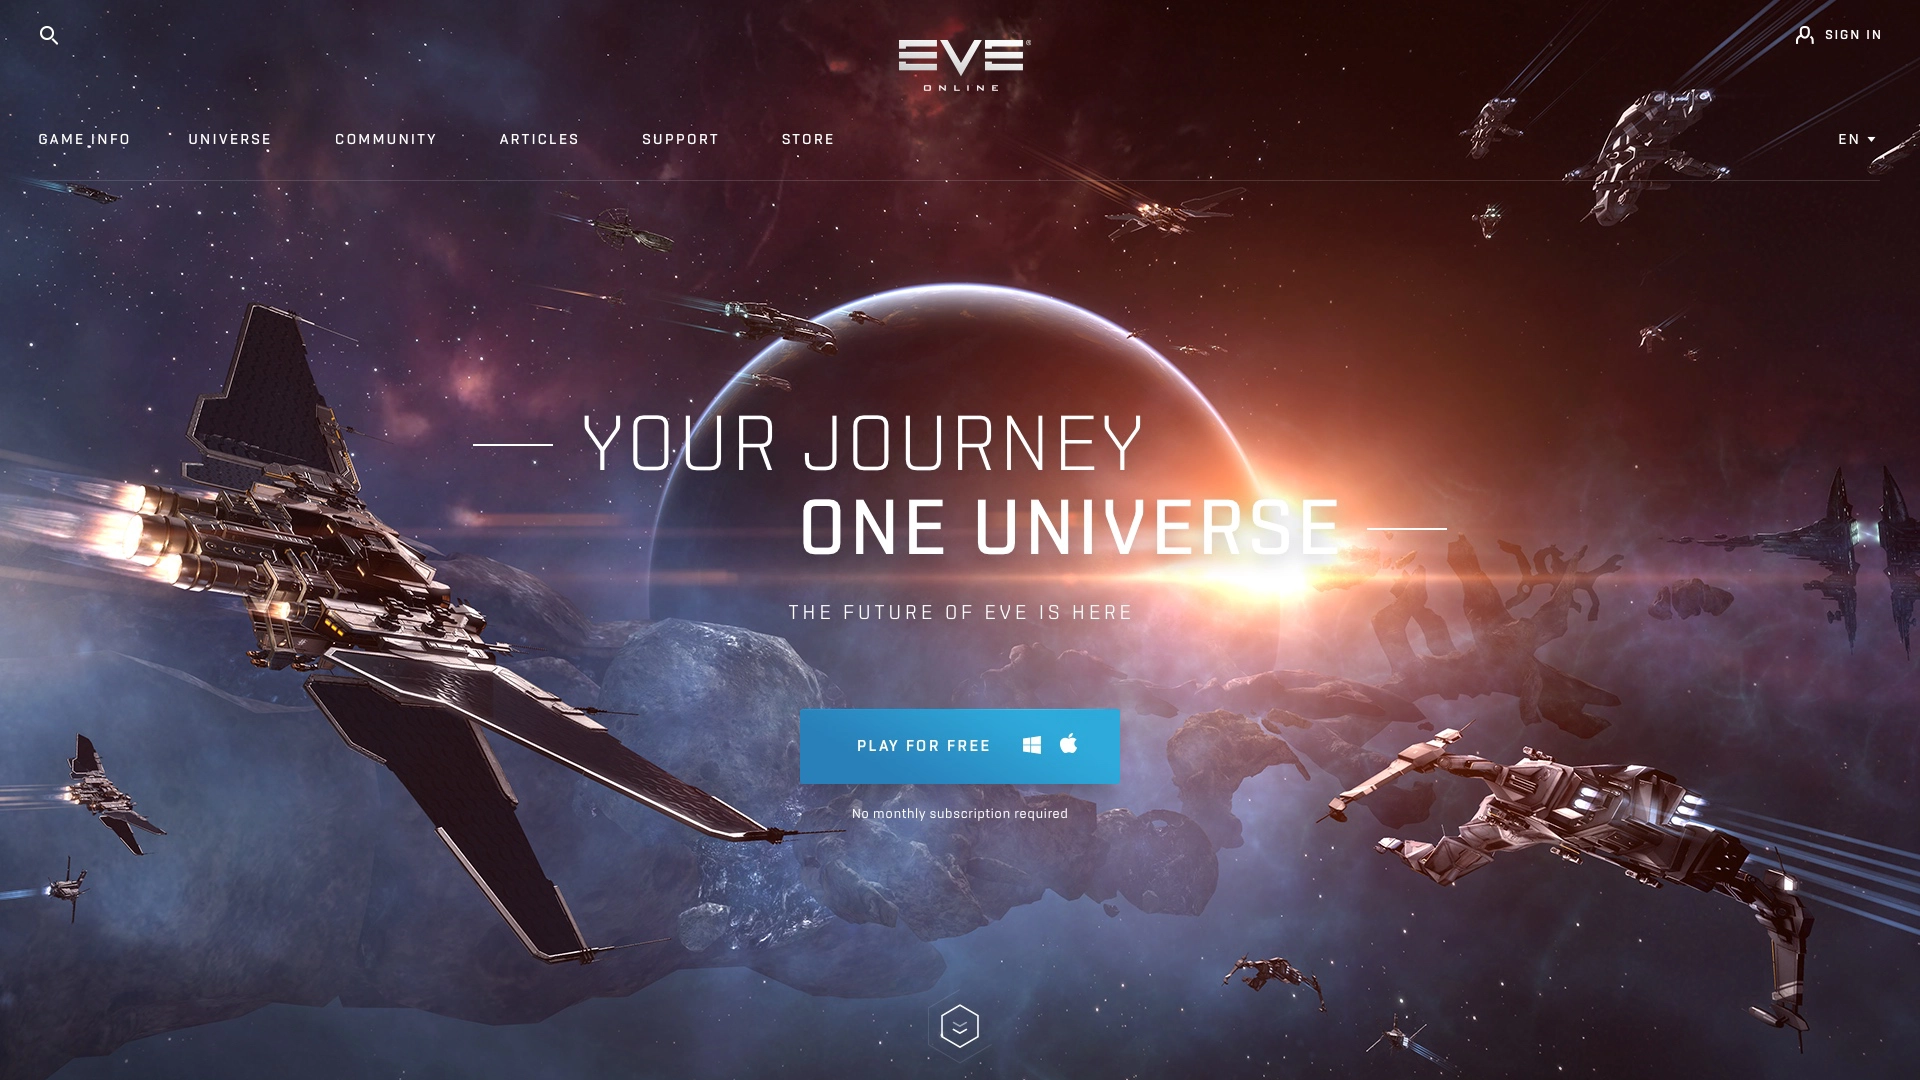 Website for EVE Online